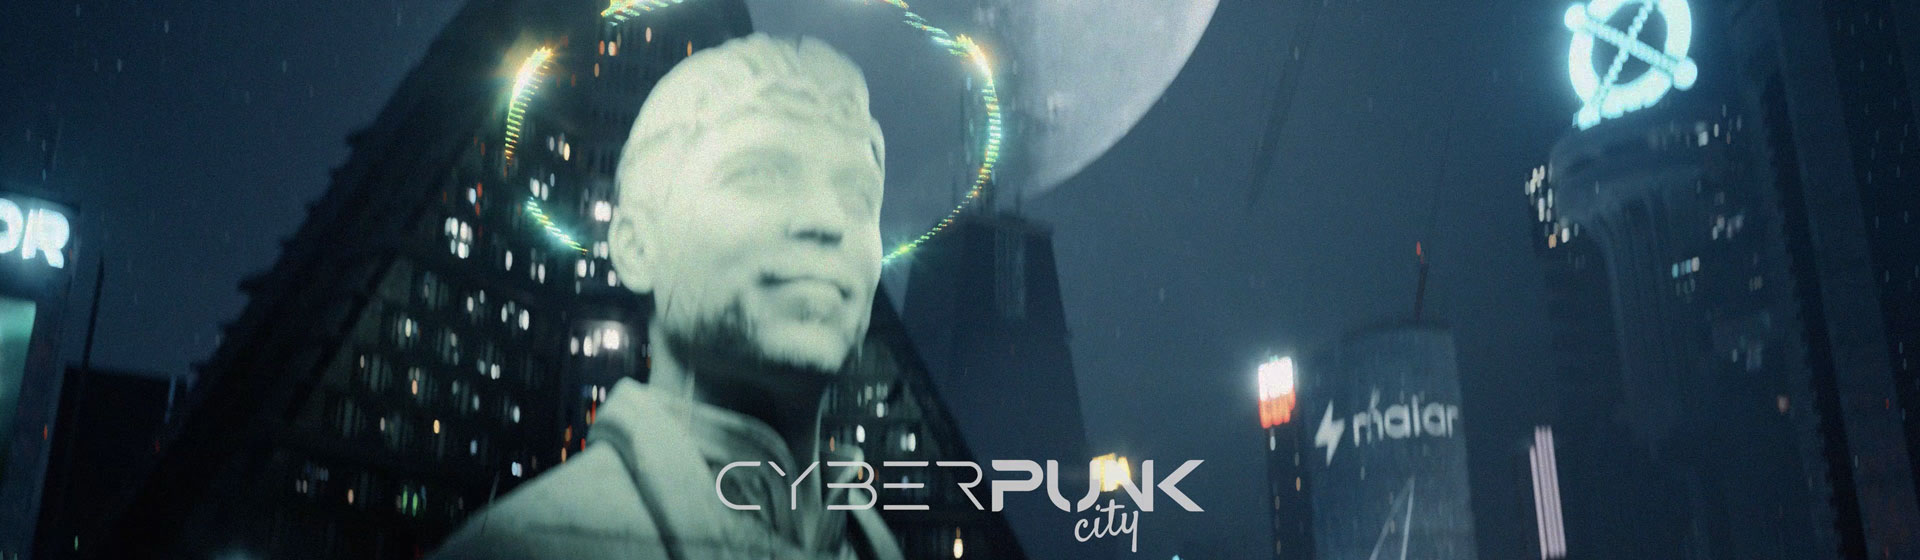 Cyberpunk City — Teaser 02